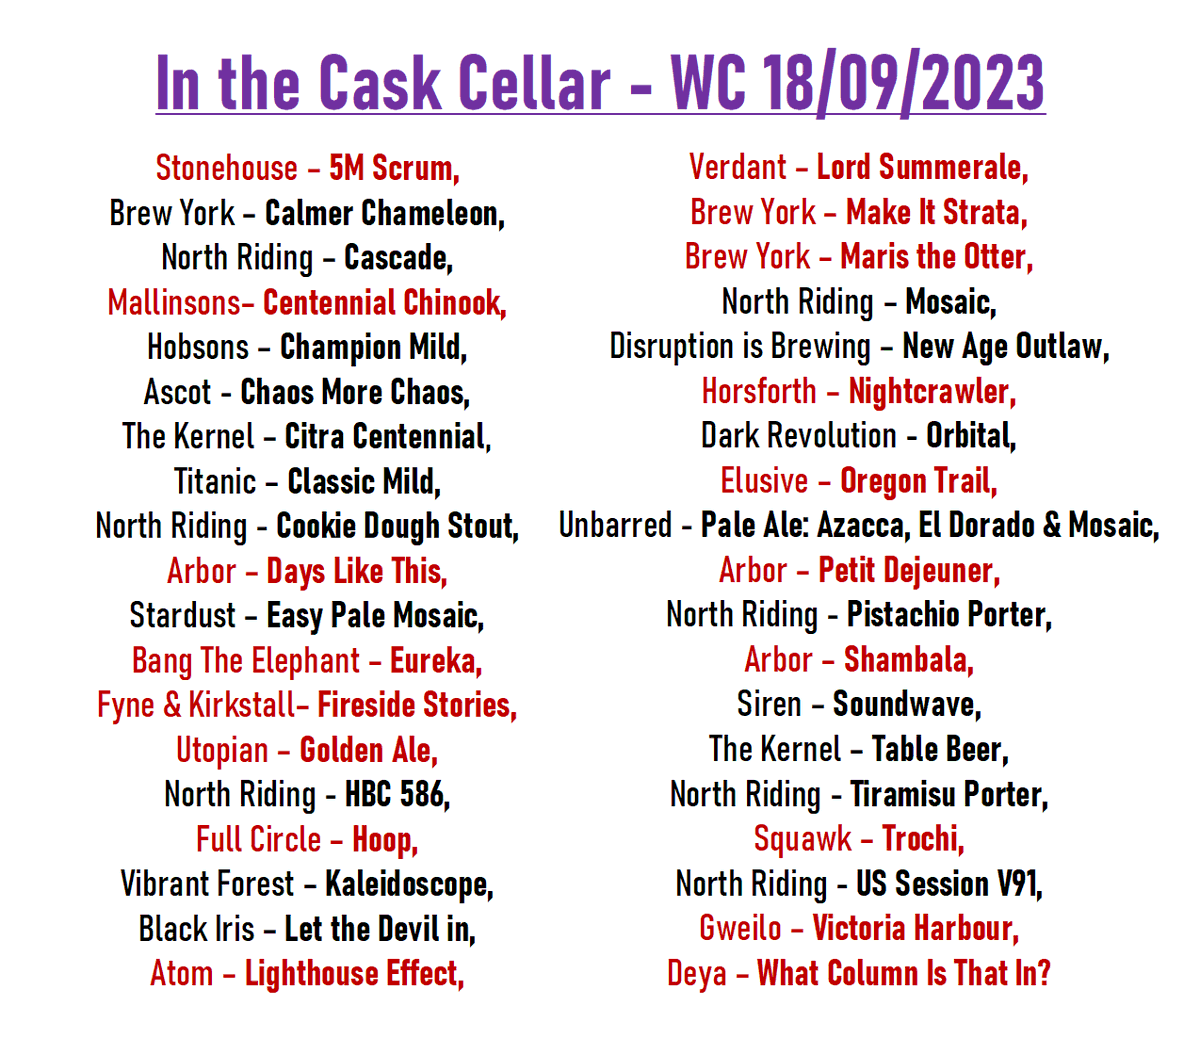 New beers to the cask cellar this week from: @StoneHouseBrewr @Mallinsons @ArborAles @BangTheElephant @FyneAles @kirkstallbrew @TeamUtopian @fullcirclebrew @atombeers @VerdantBrew @HorsforthBrewer @ElusiveBrew @SQUAWKBrewingCo @gweilobeeruk @DEYA